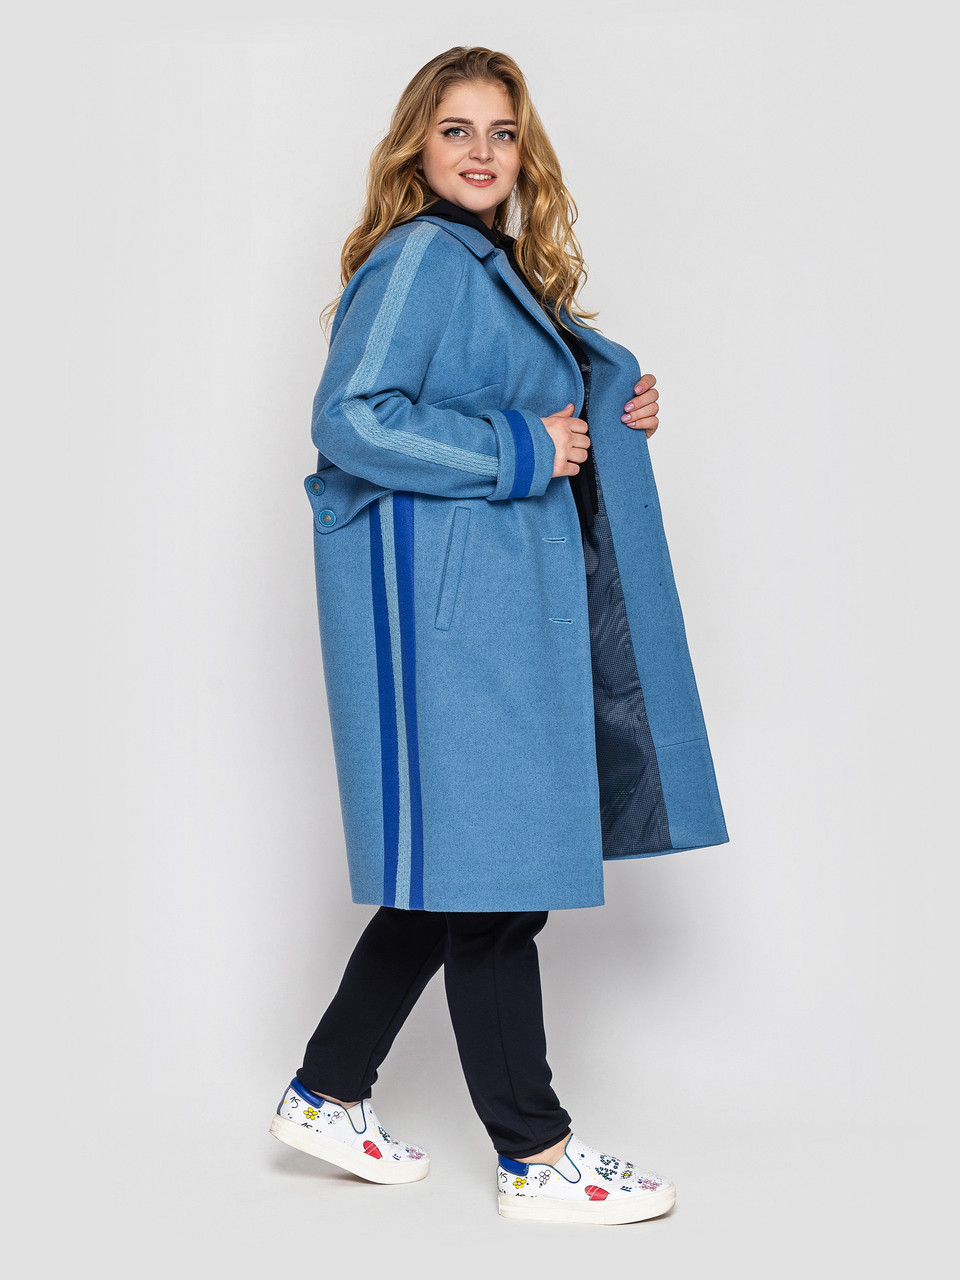 Демісезонне оригінальне жіноче пальто з кашеміру на підкладці розміри 52 54 56